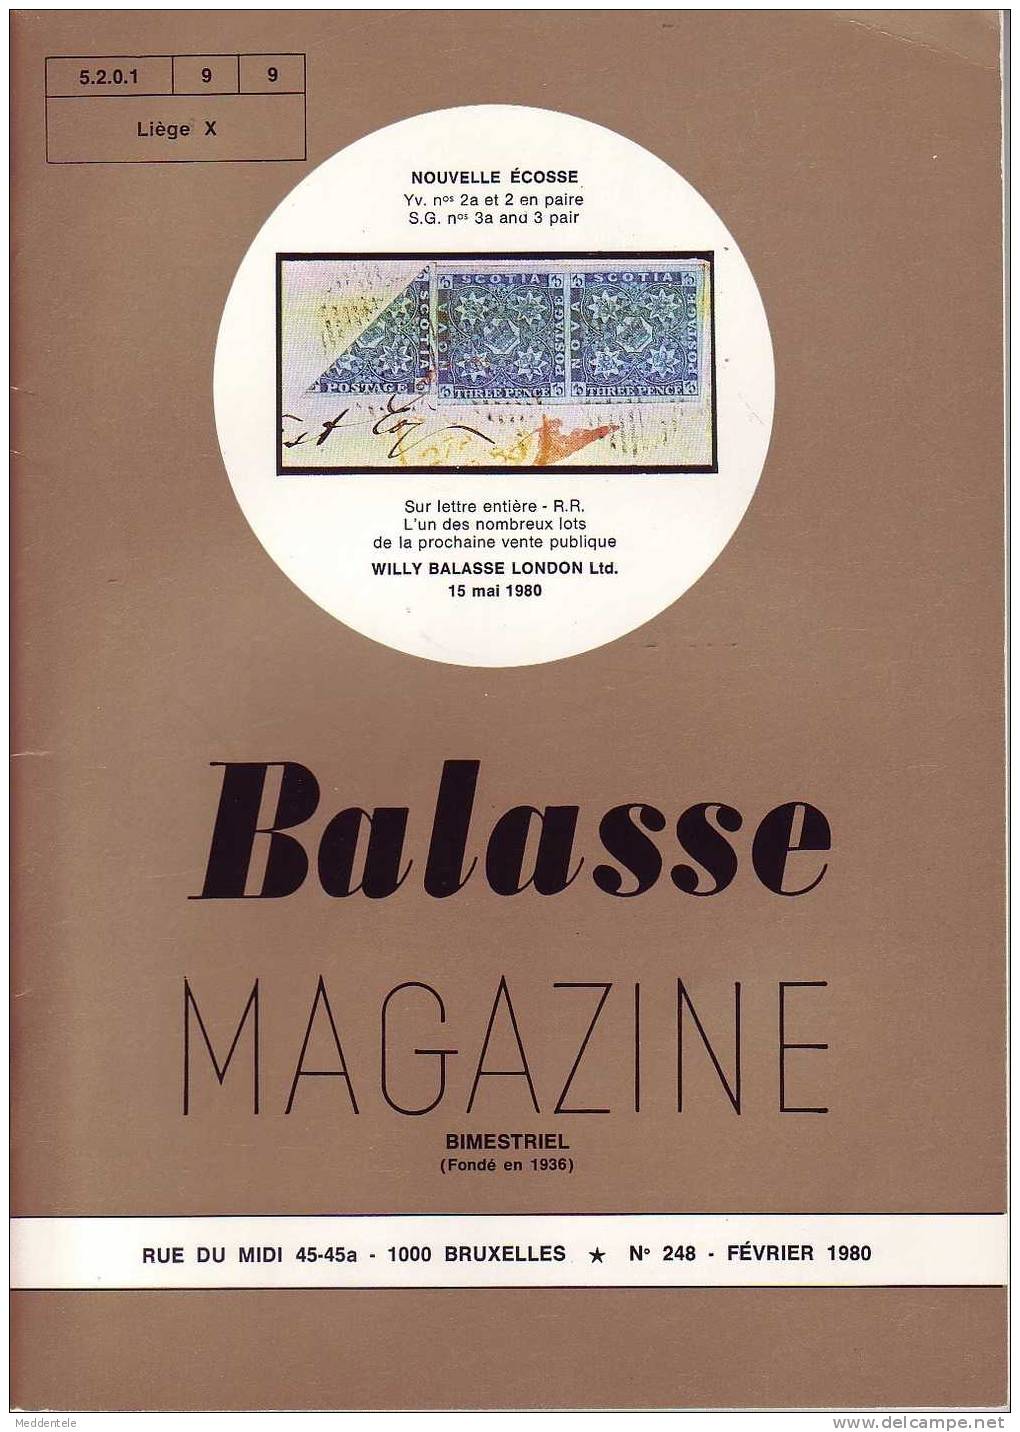 BALASSE MAGAZINE N° 248 - Français (àpd. 1941)